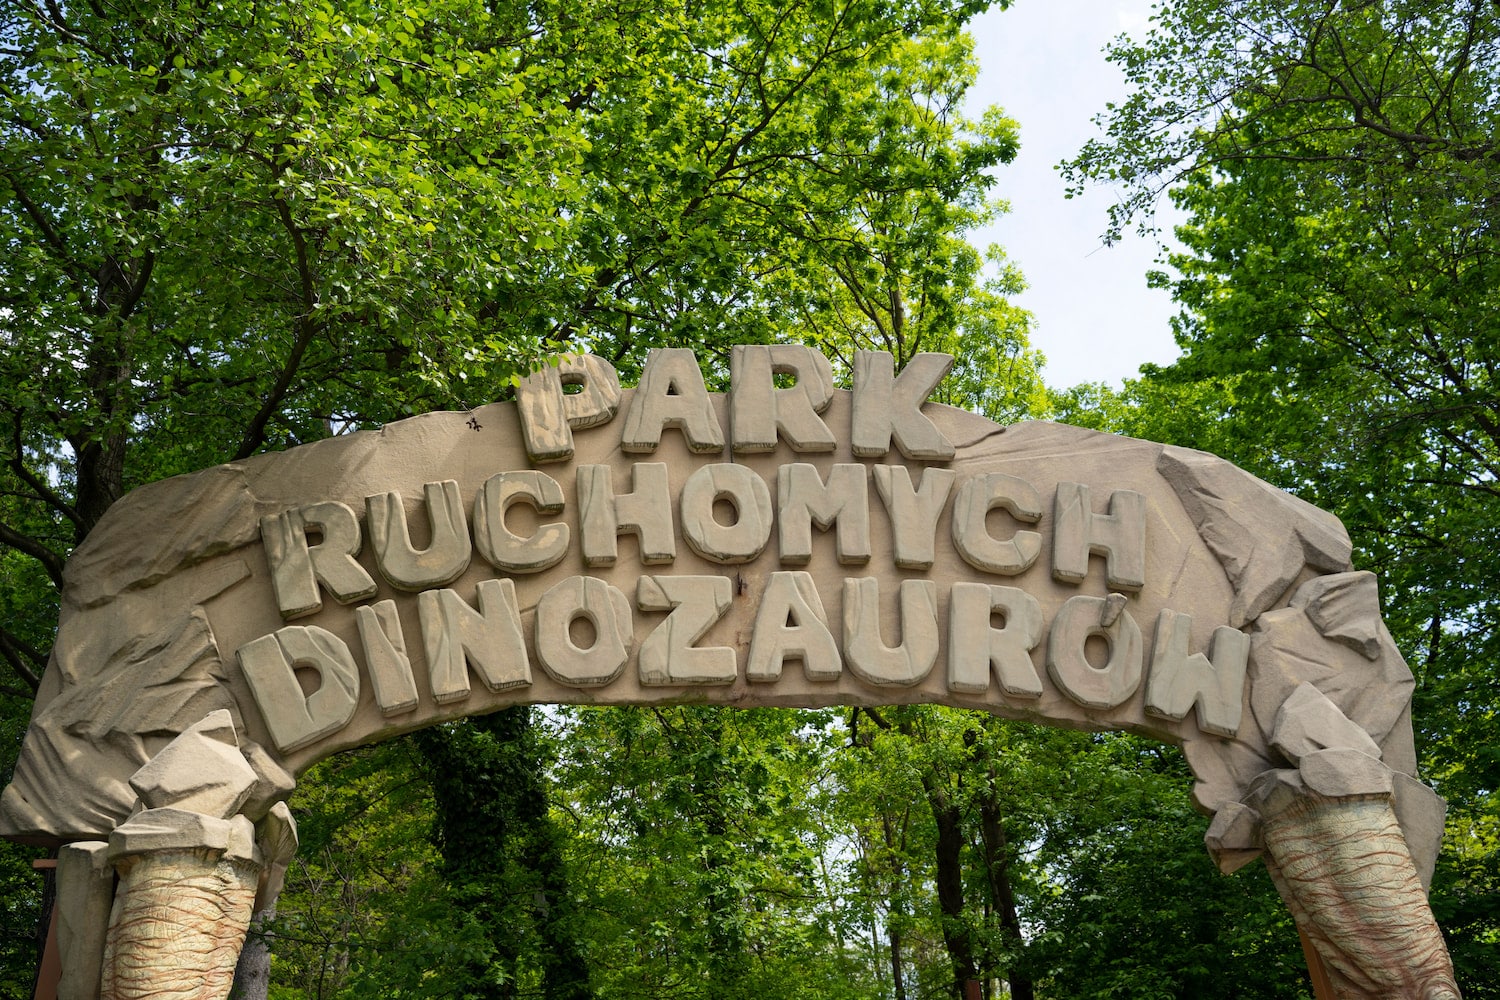 Park ruchomych dinozaurów